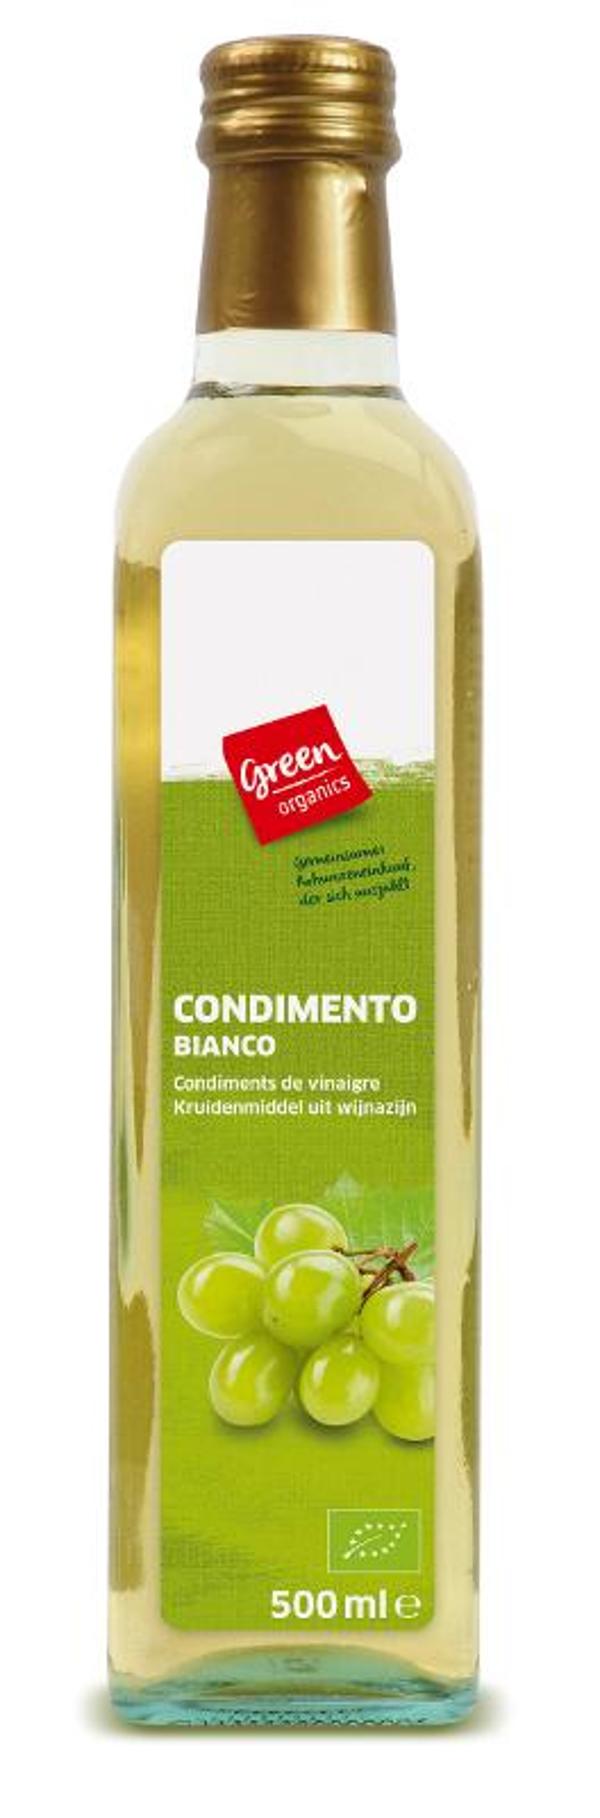 Produktfoto zu green Weißer Balsamico